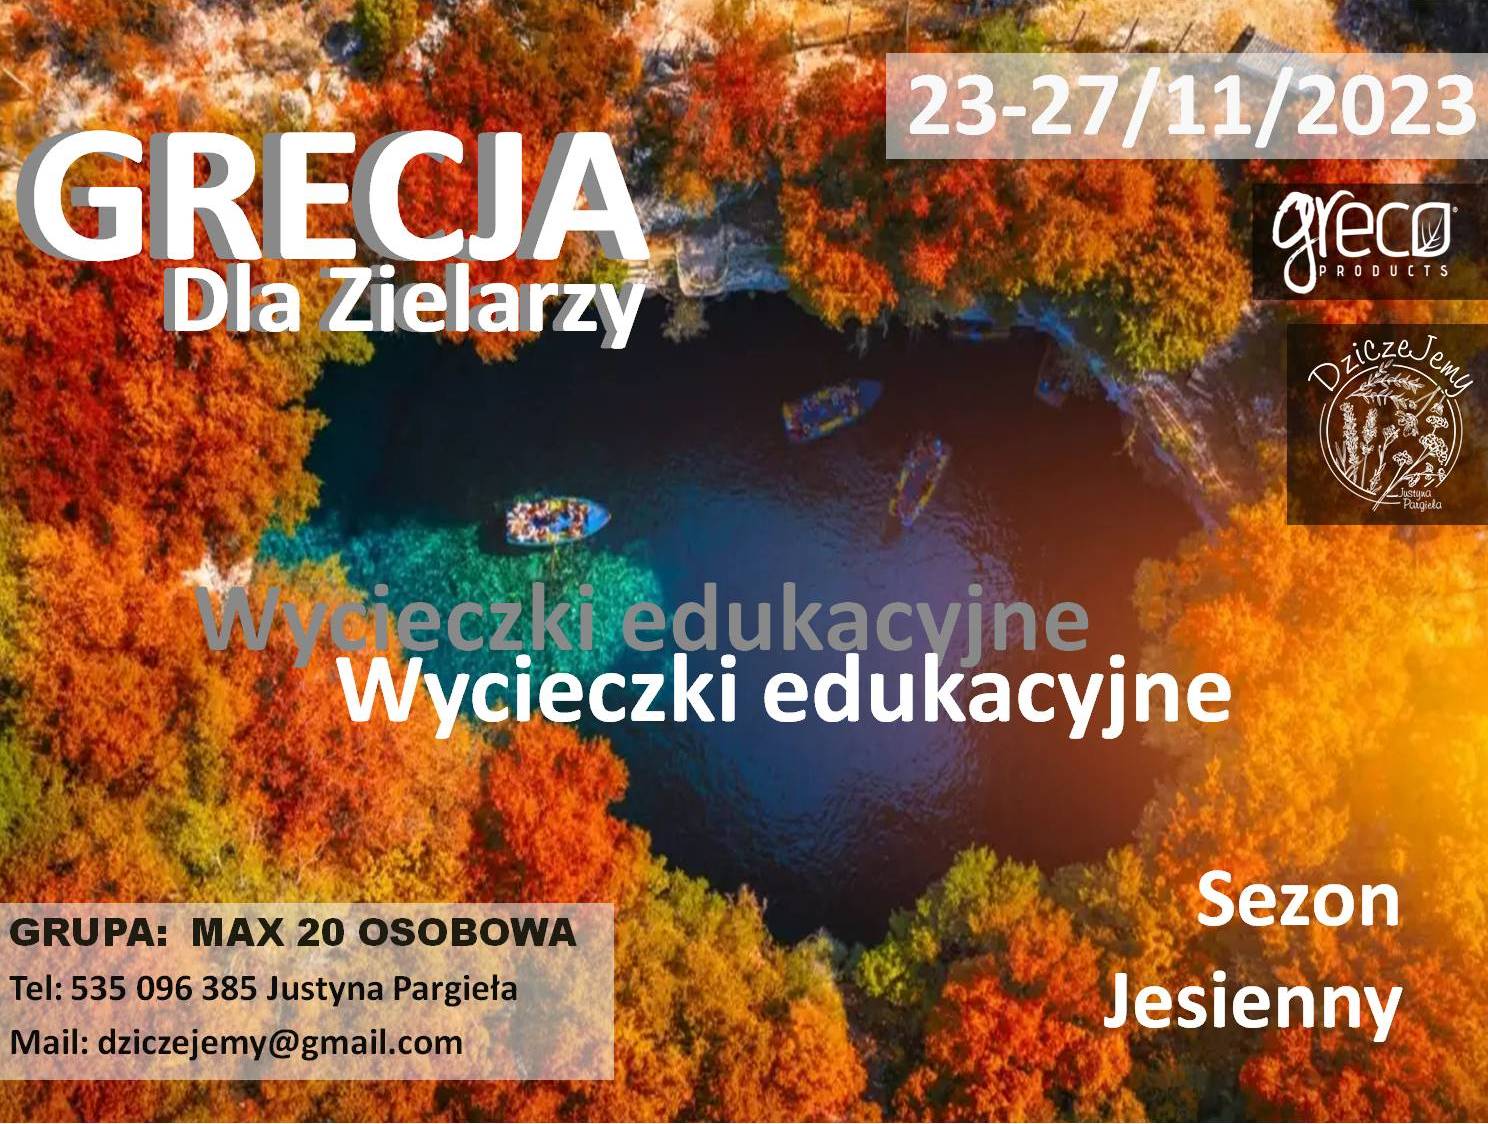 Grecja dla Zielarzy - Wycieczka edukacyjna - edycja jesienna 23-27/11/2023